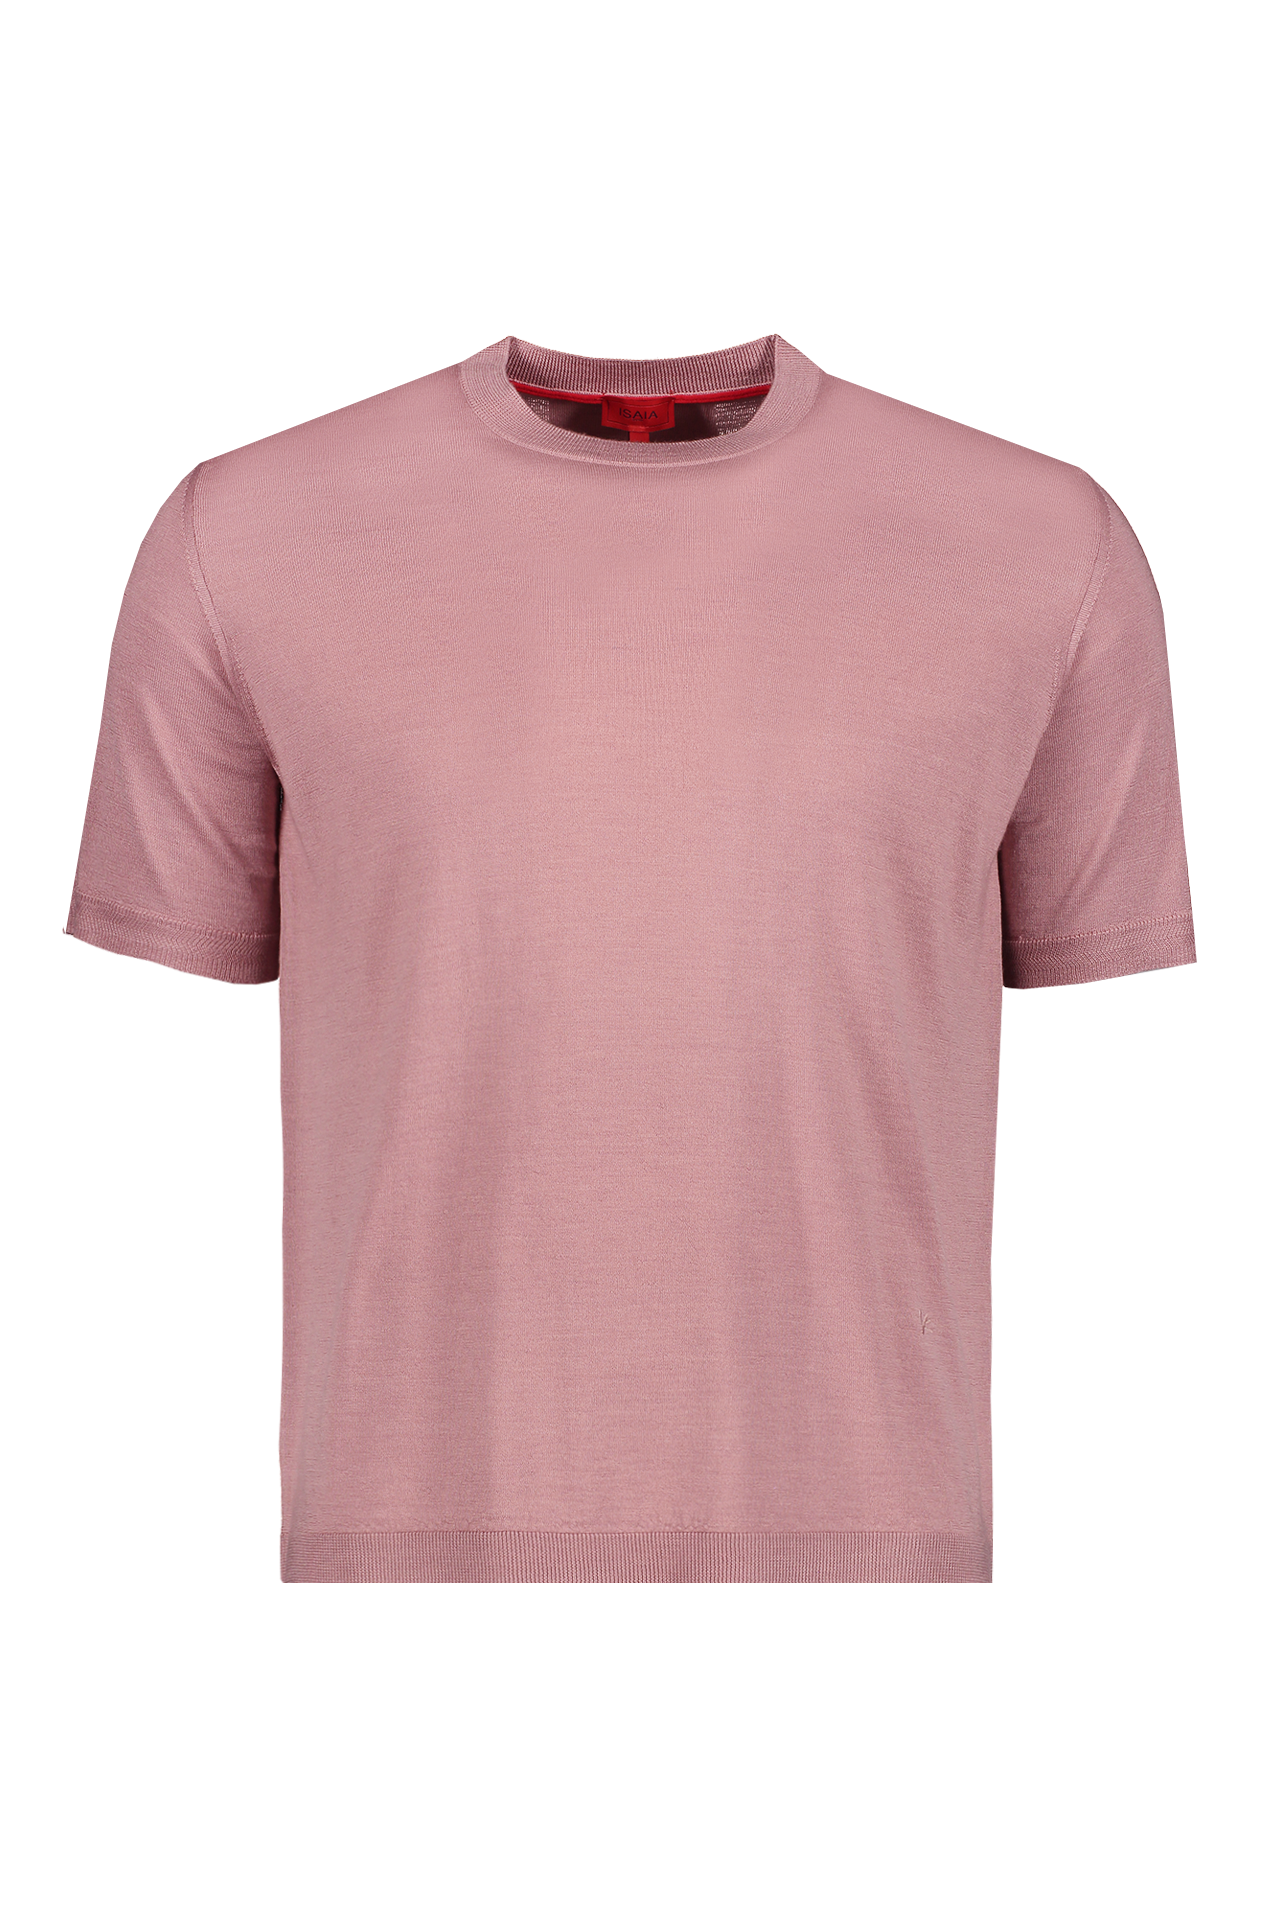 T-shirt Short Sleeve- Cashsilk Wool (7017211232371)